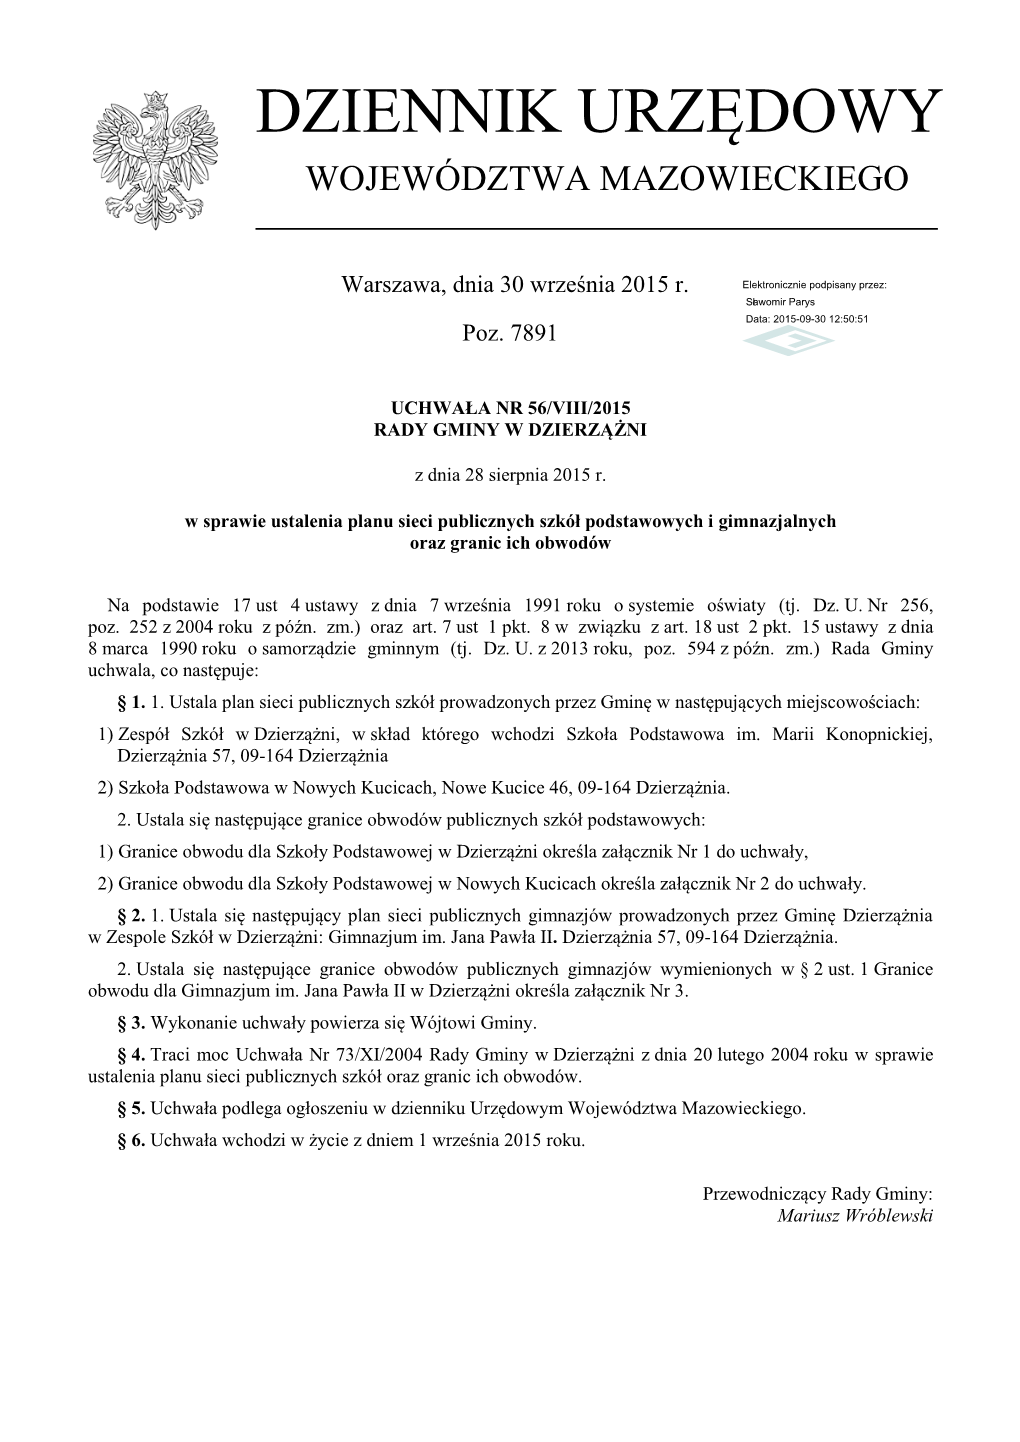 Uchwała Nr 56/VIII/2015 Z Dnia 28 Sierpnia 2015 R